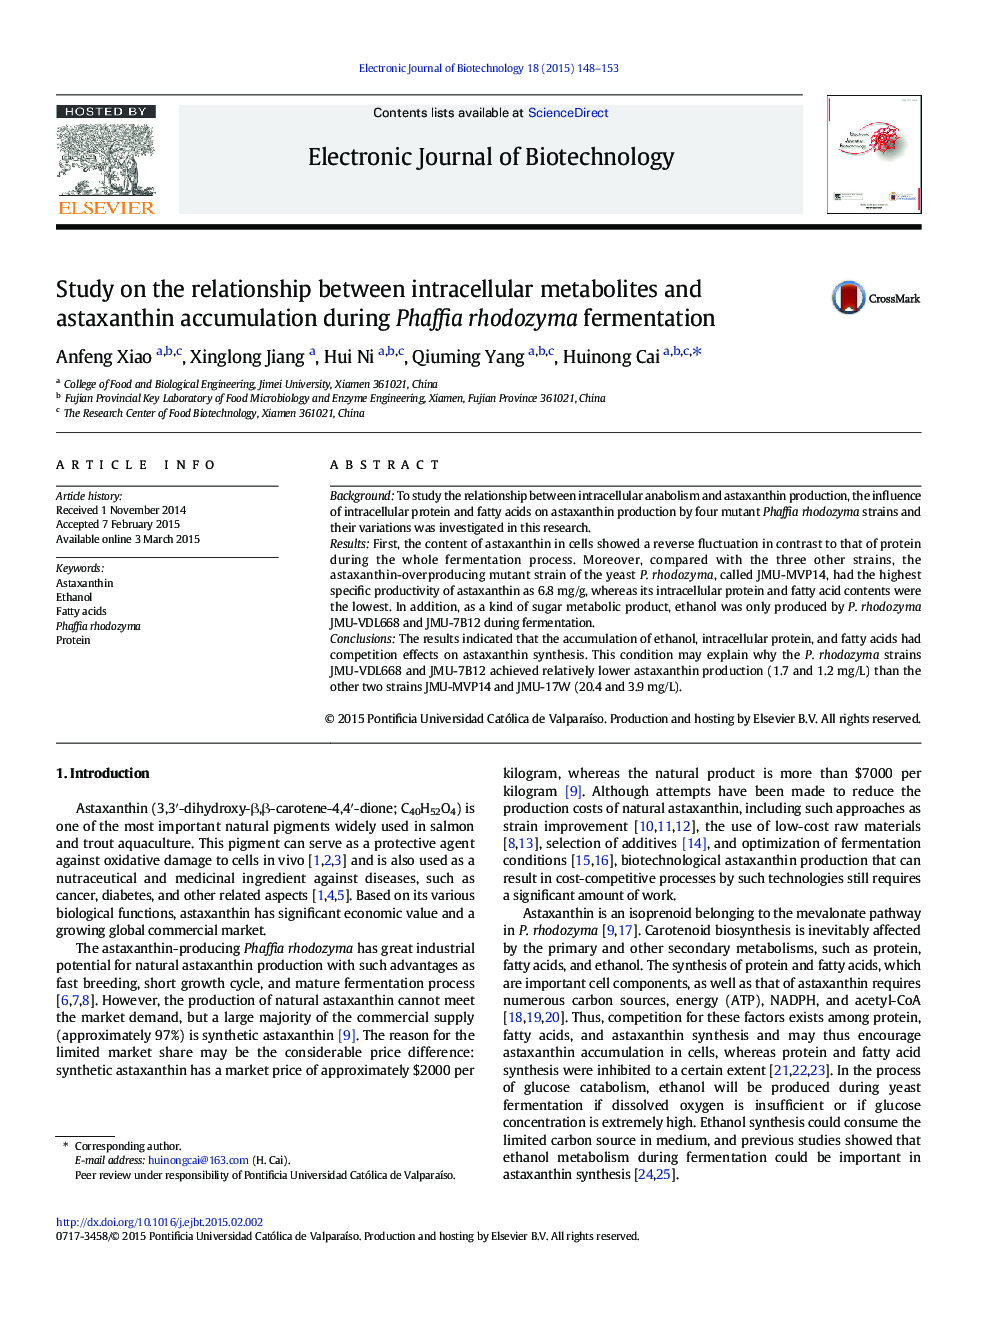 بررسی ارتباط بین متابولیتهای داخل سلولی و تجمع آساکسانتیین در فرایند تخمیر فافیه ردوزیمه 